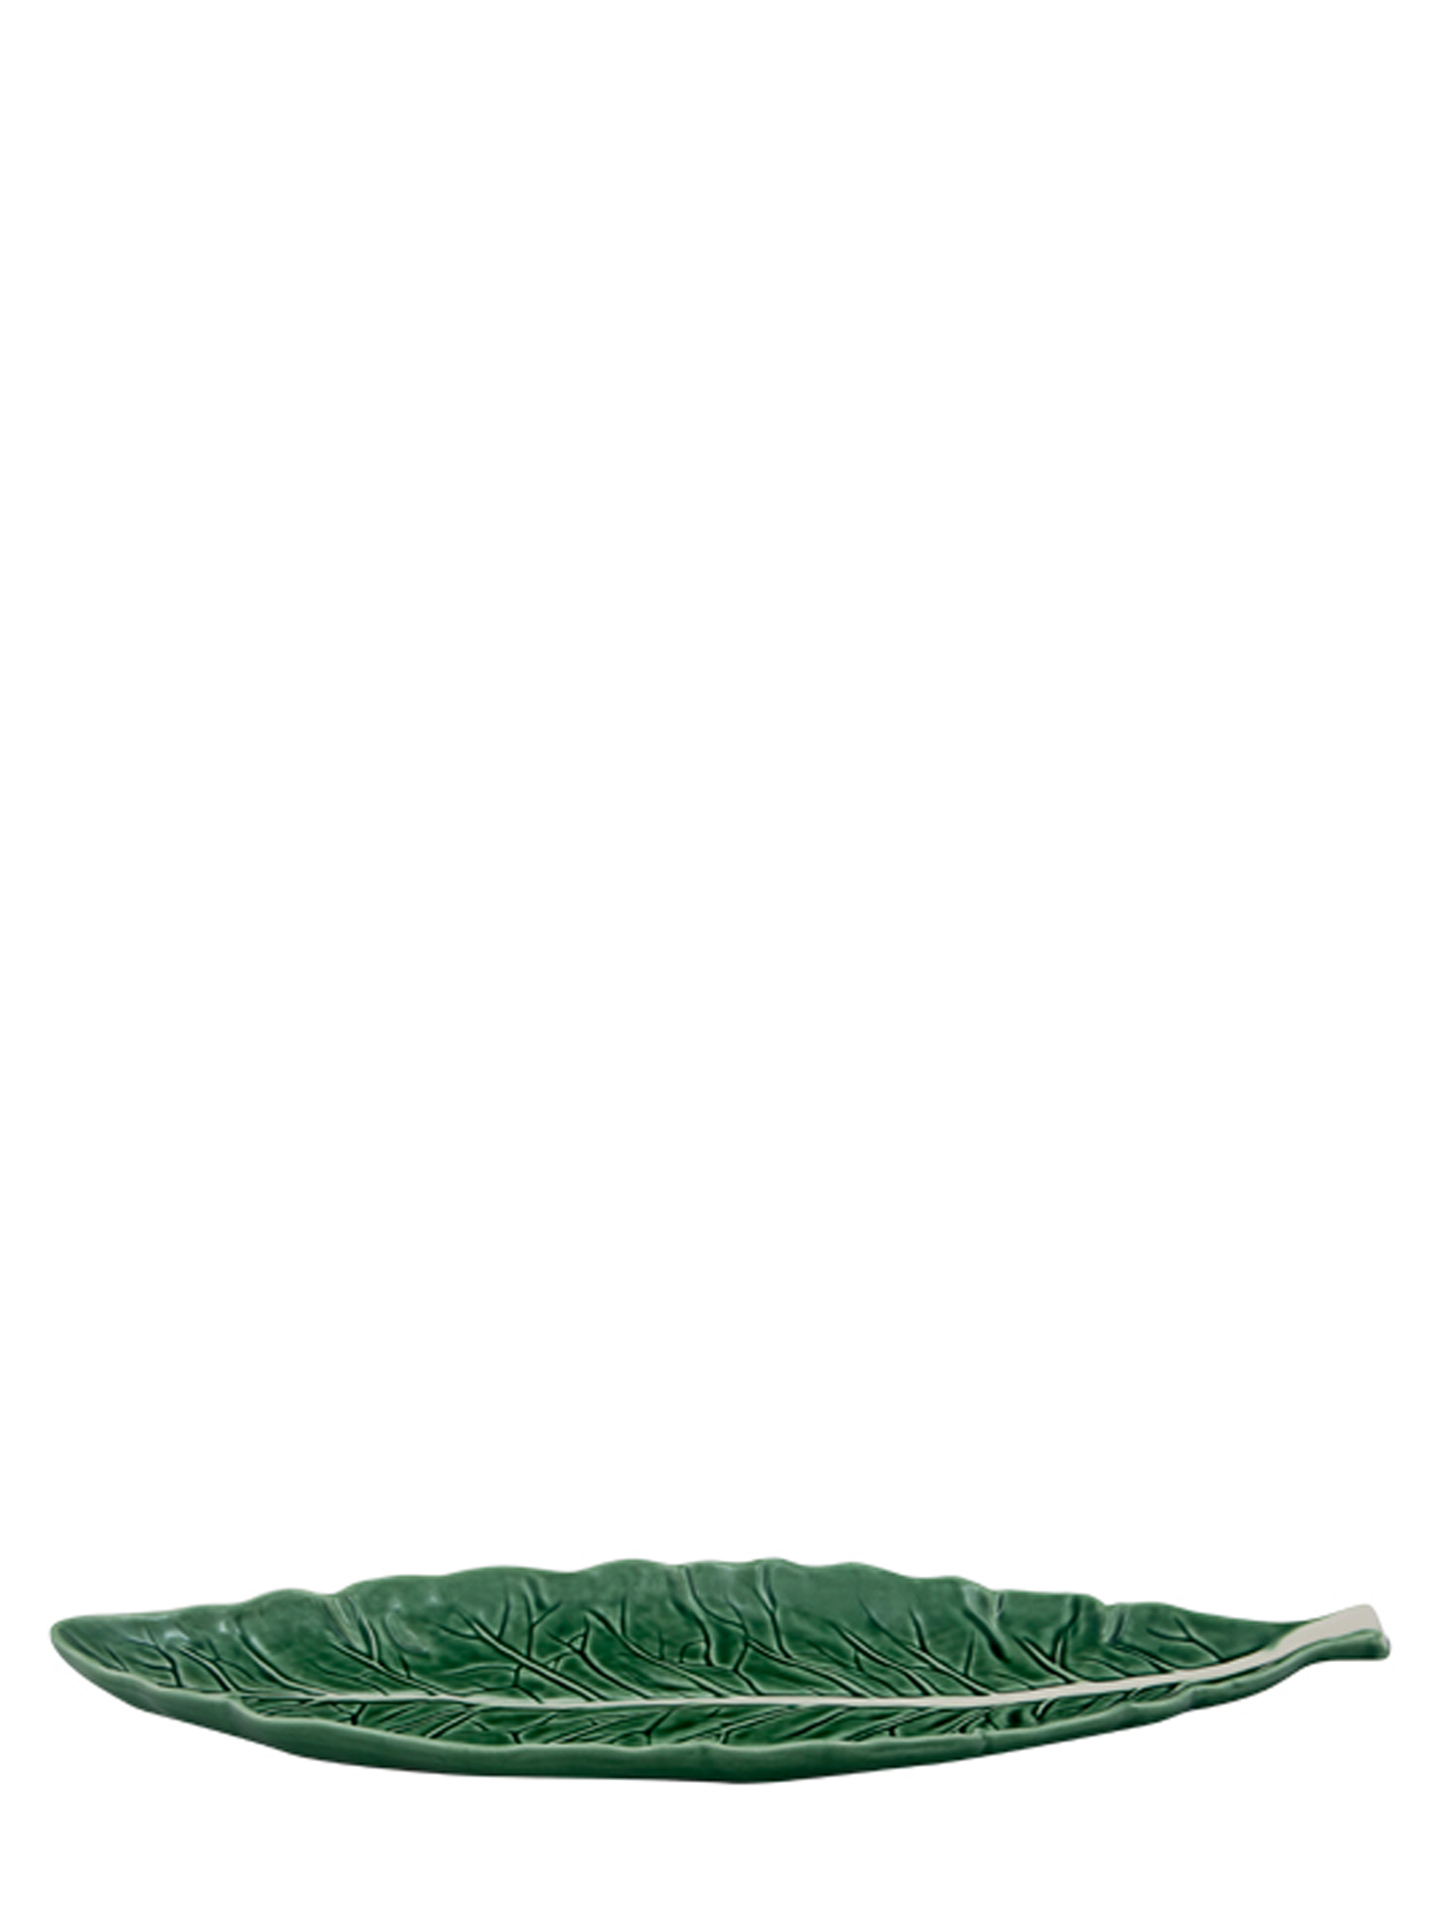 Cabbage Narrow Leaf, Green (40 cm)